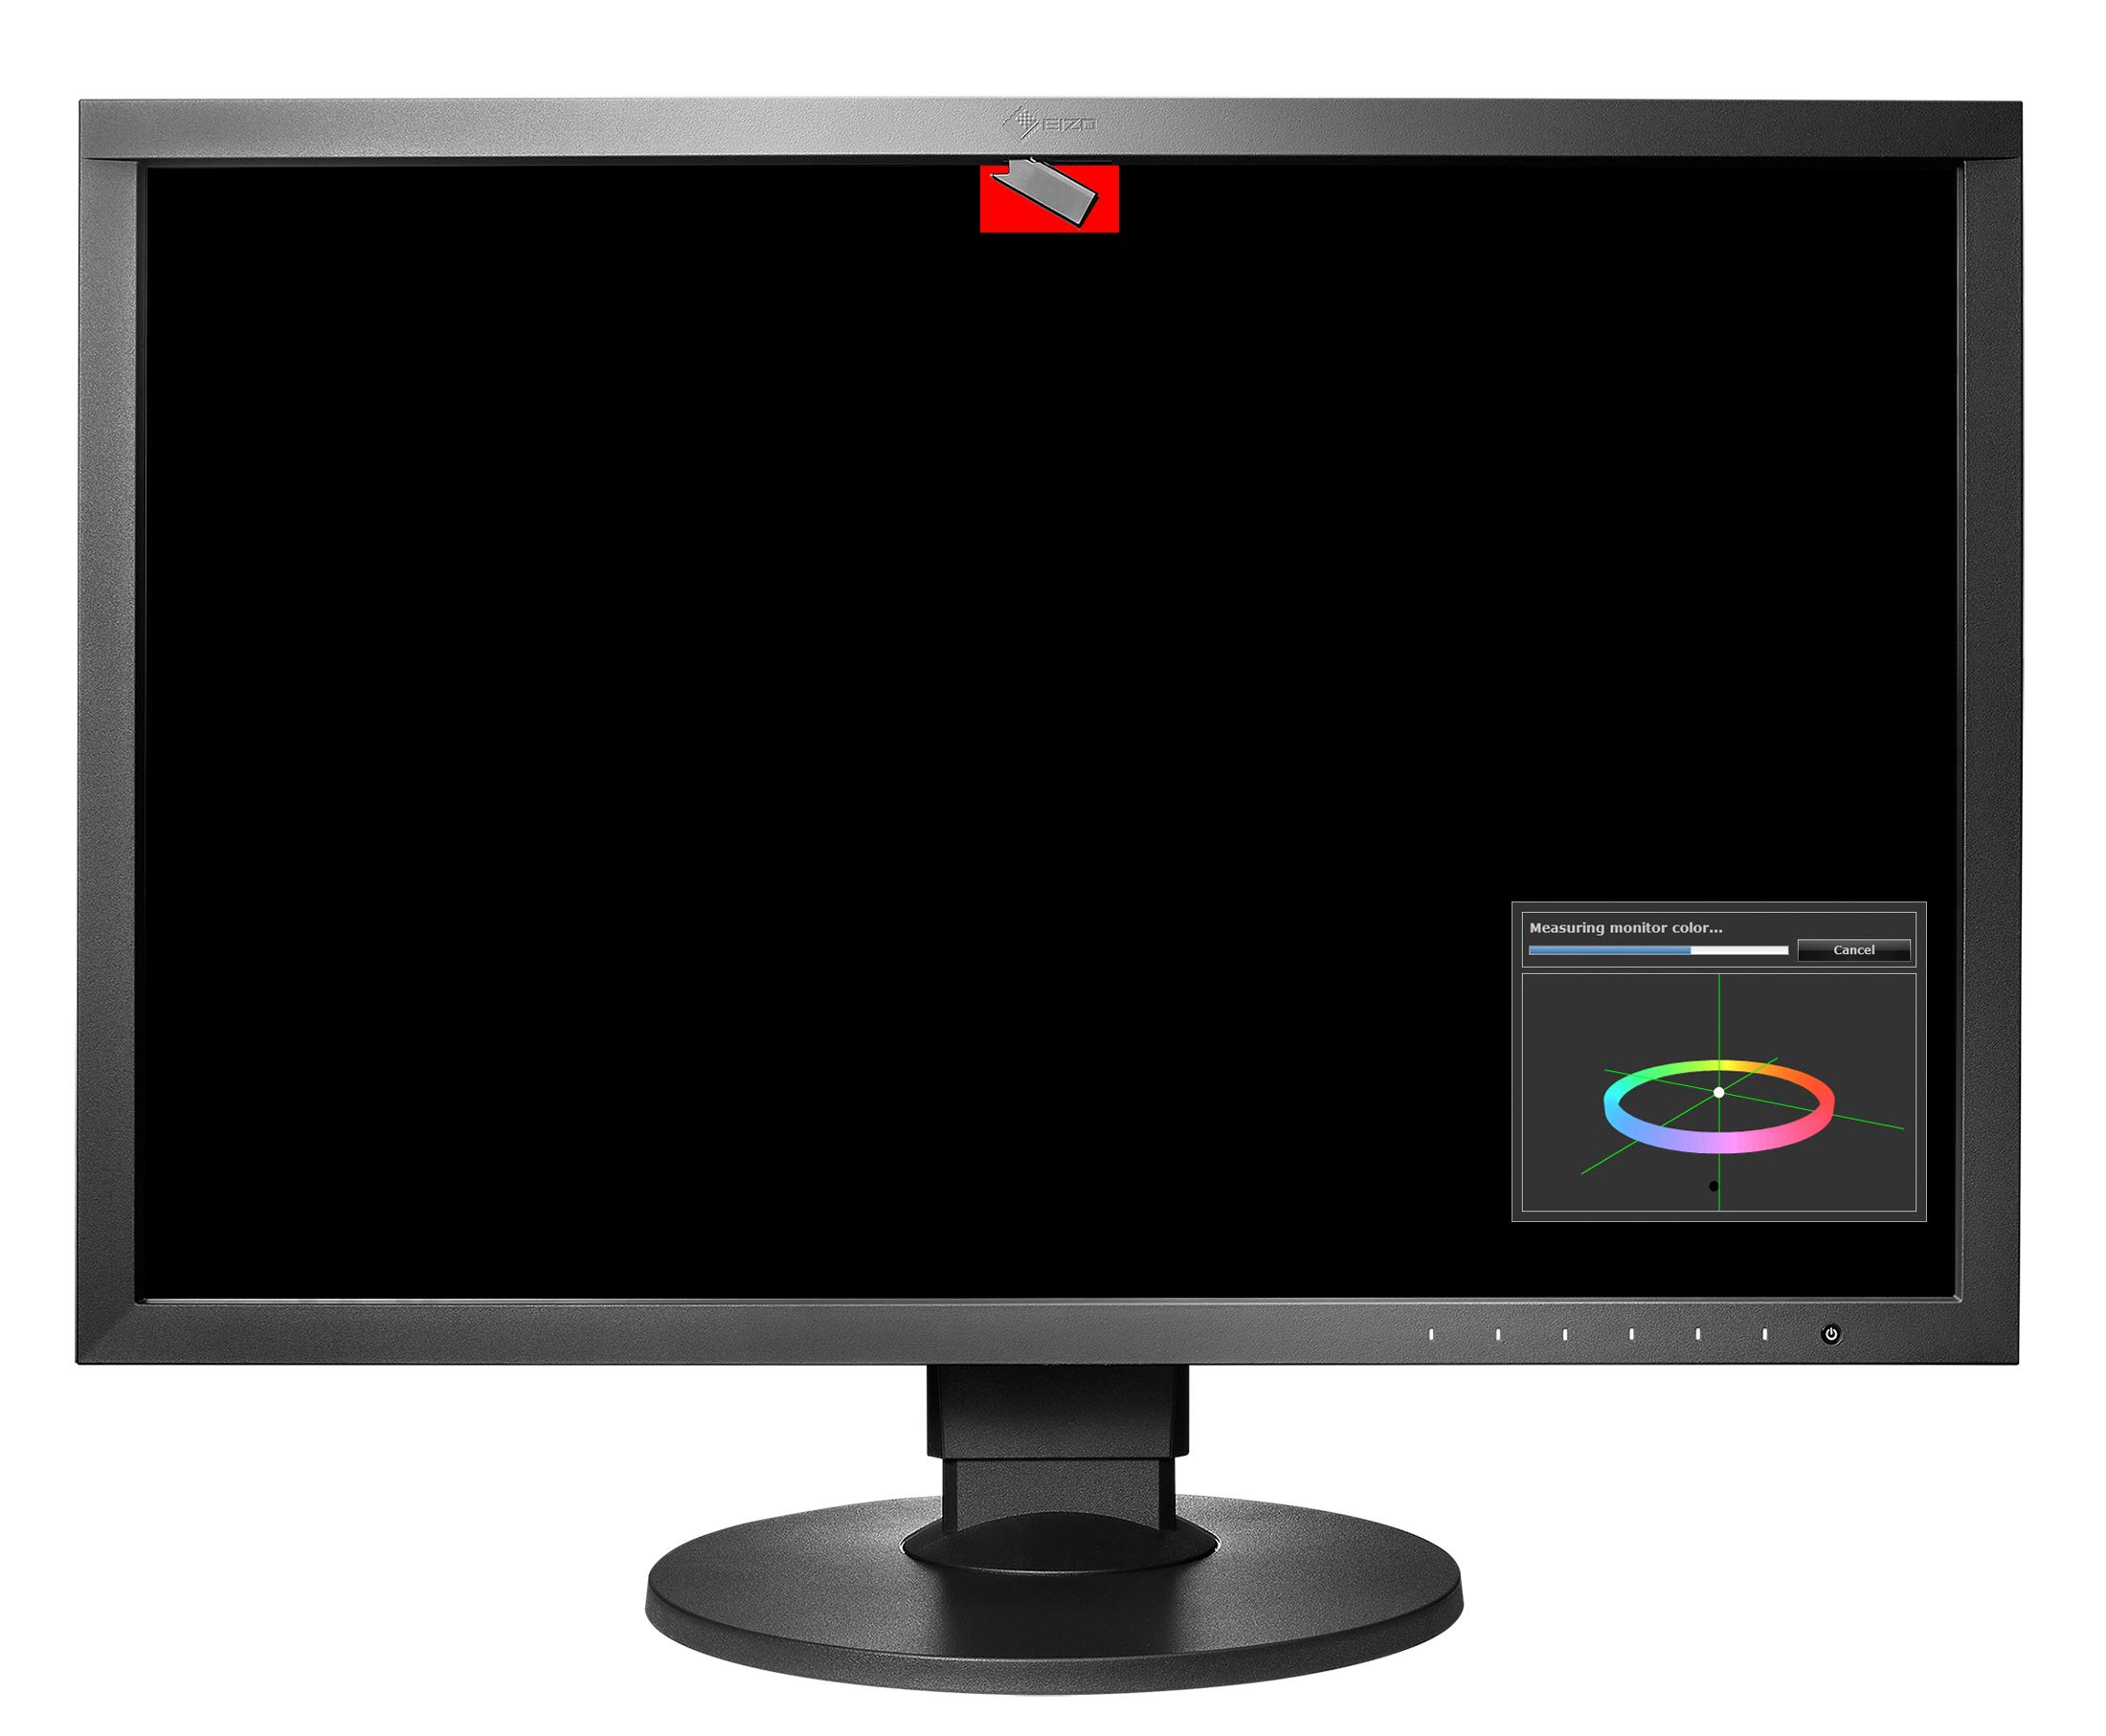 Eizo CG2420-BK ColorEdge Professional Color Graphics Monitor 24.1